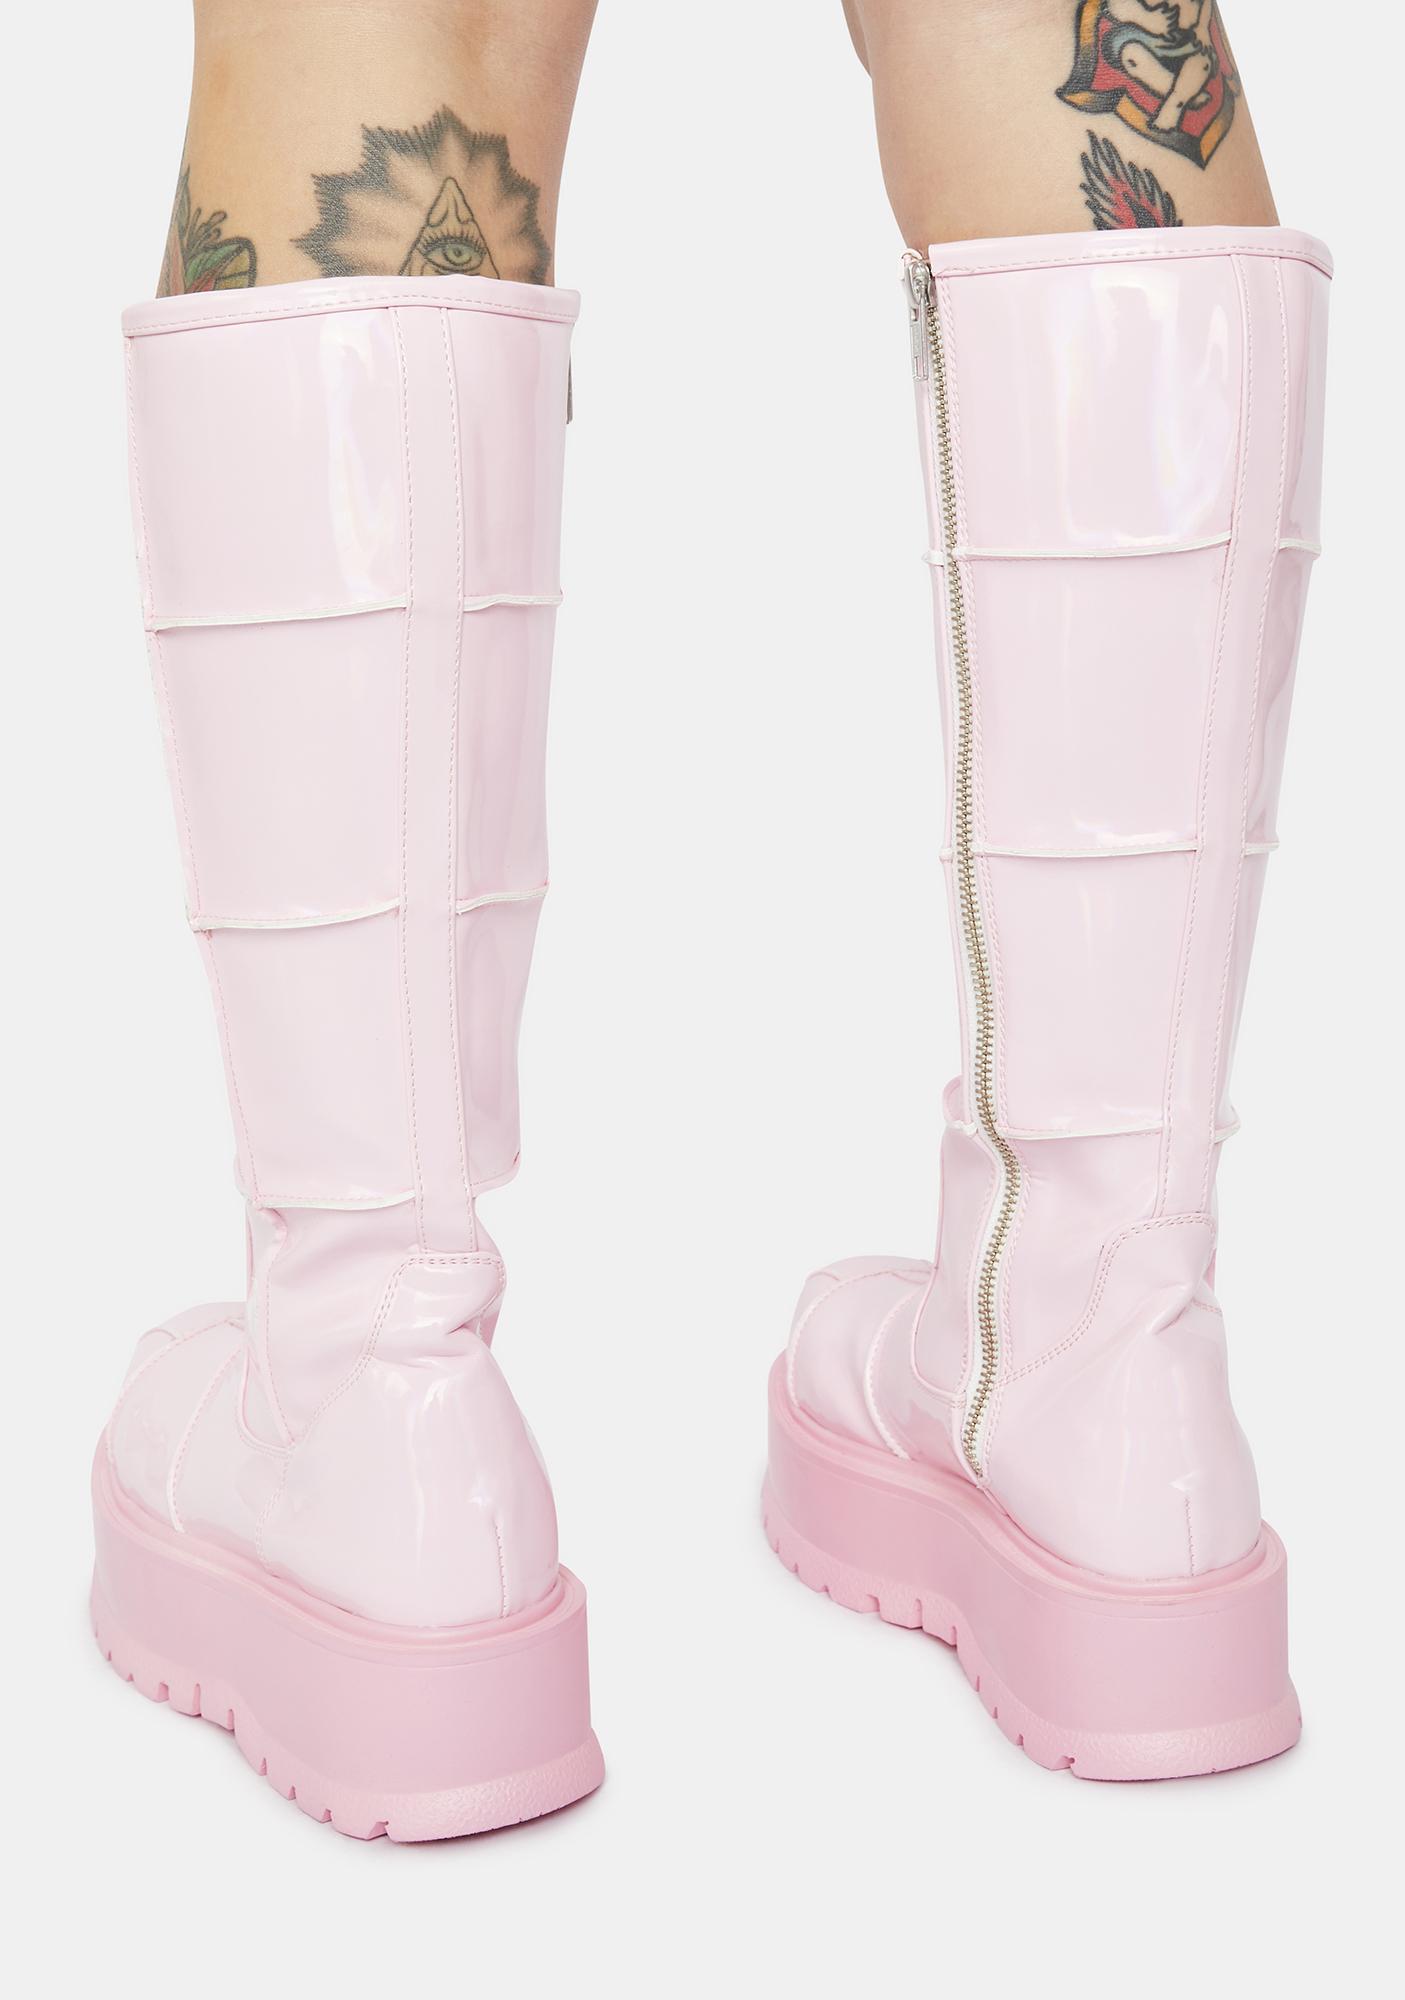 Demonia Slacker-230 Knee High Boots - Pastel Pink | Dolls Kill